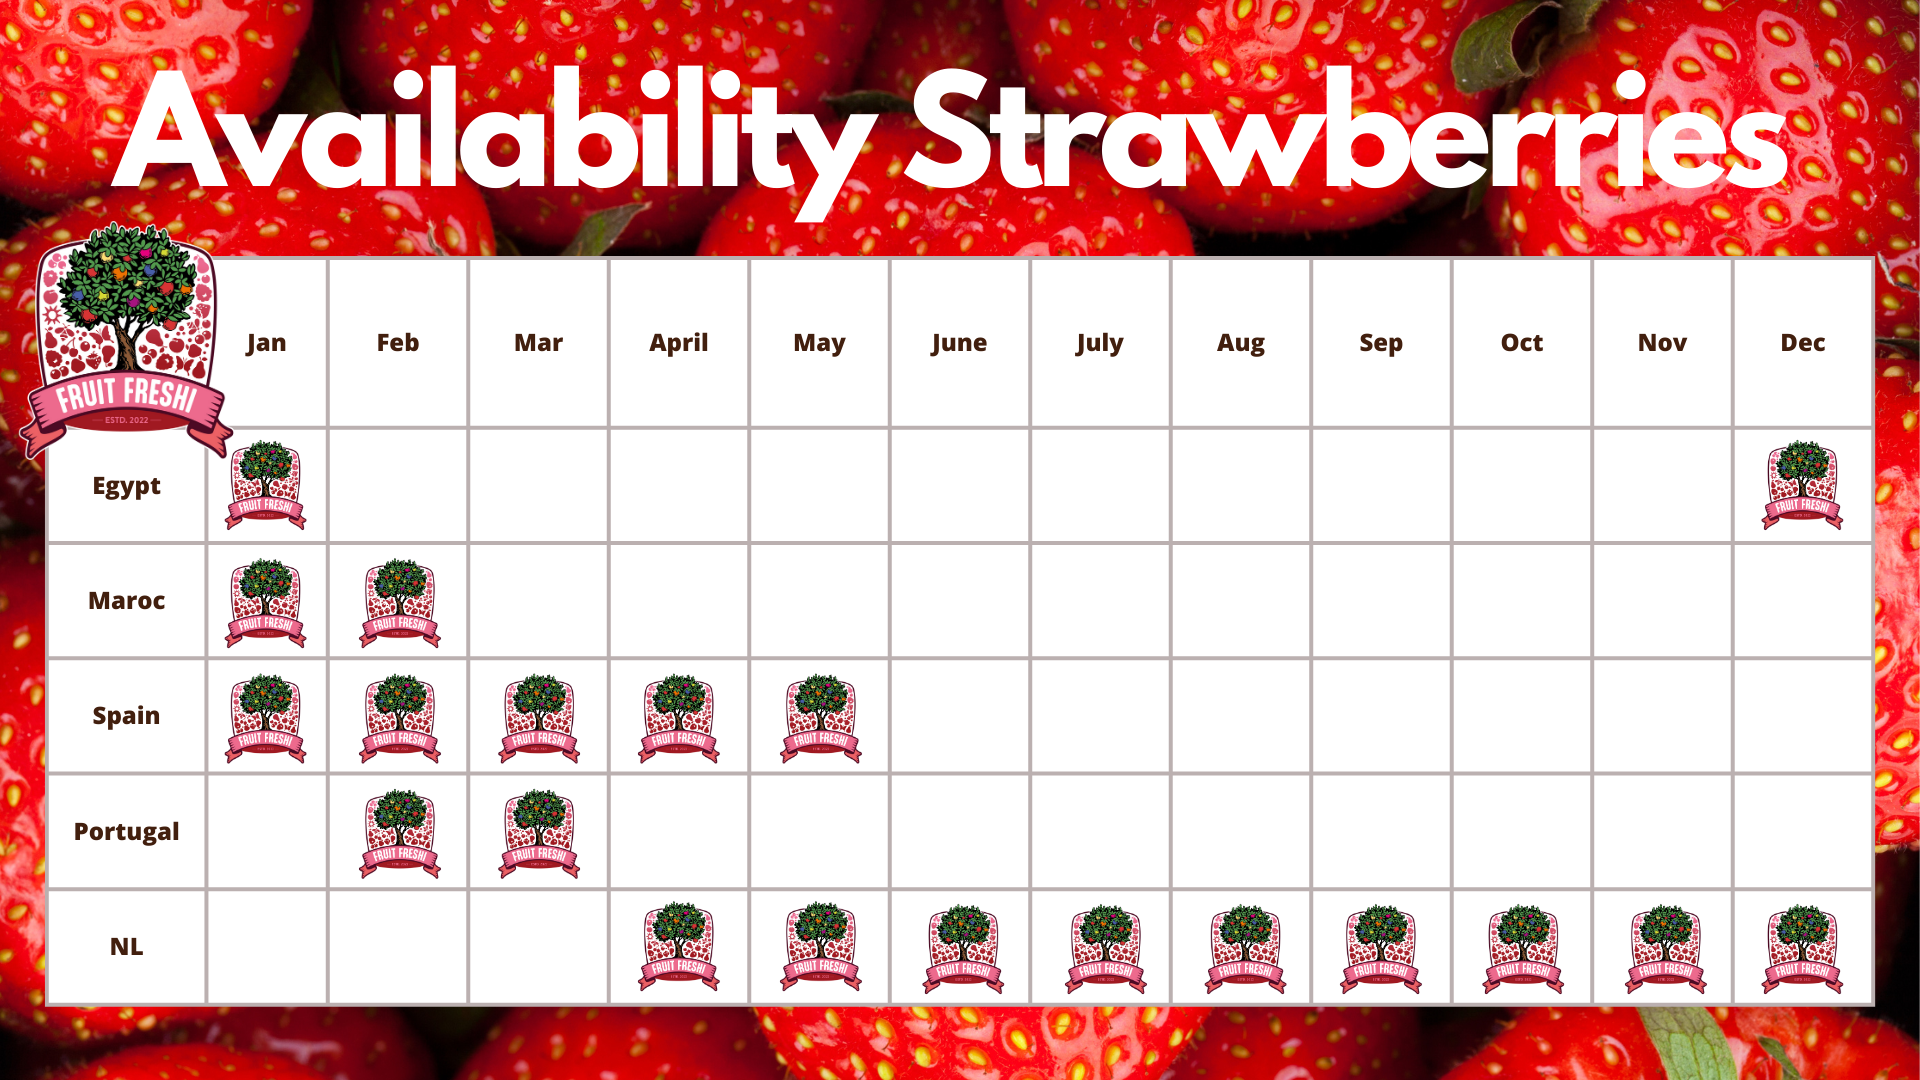 Availability Strawberries Fruit Freshi